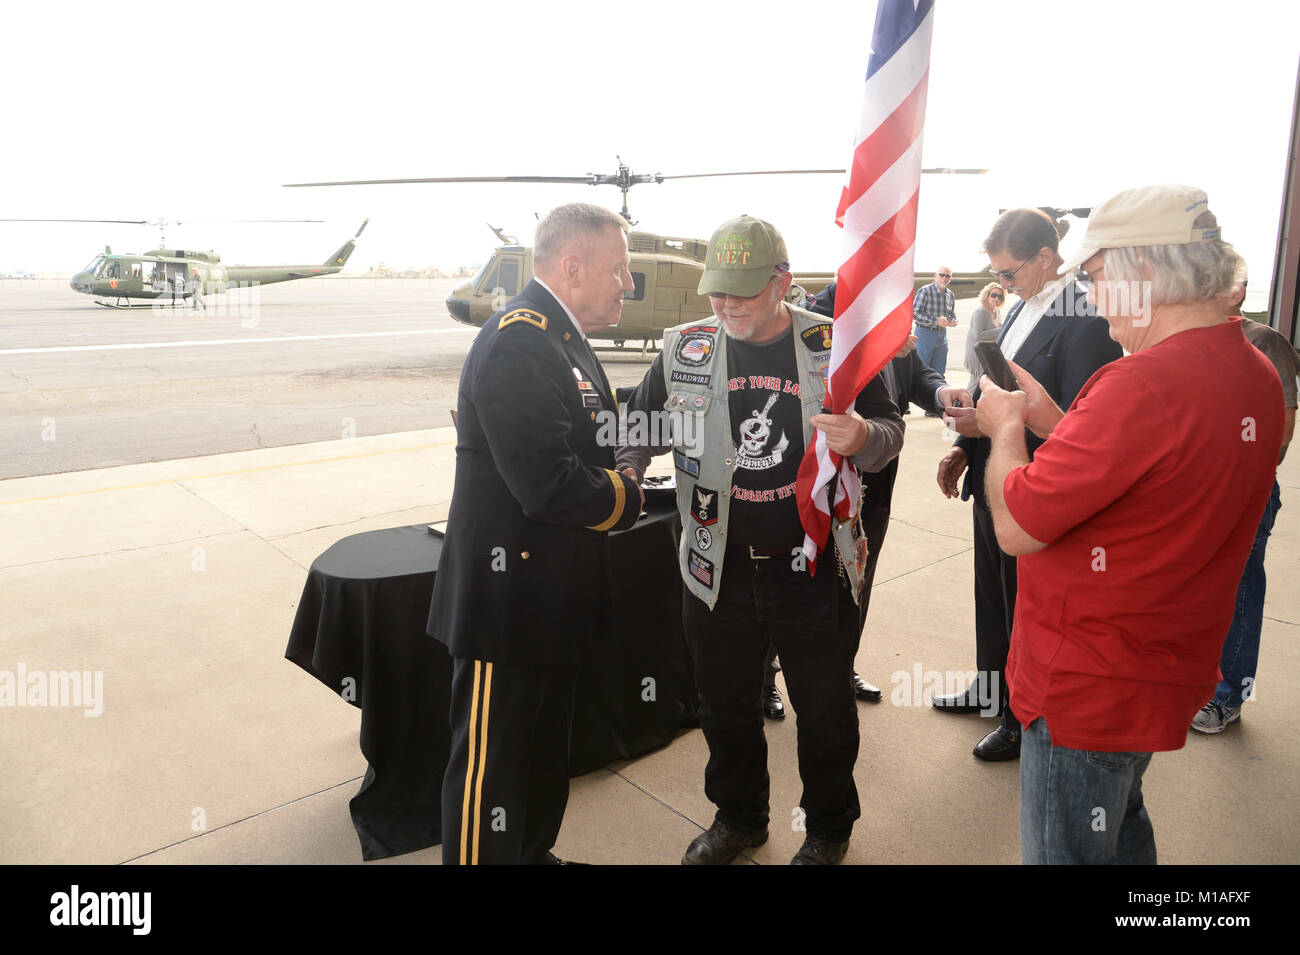 Les anciens combattants ont été honorés lors de la célébration de la Journée des anciens combattants de 2016 à Mather Field, en Californie. Les membres de l'auditoire vu comme une grande plaque, honorant les pilotes, l'équipage, le personnel de maintenance et du personnel médical qui ont servi pendant la guerre du Viet Nam, a été livré par un hélicoptère UH-1 Huey. Veteran's ont également été honoré avec une goupille spéciale recogonizing leur service à leur pays. Photos de l'US Air Force Master Sgt. David J. Loeffler. Banque D'Images